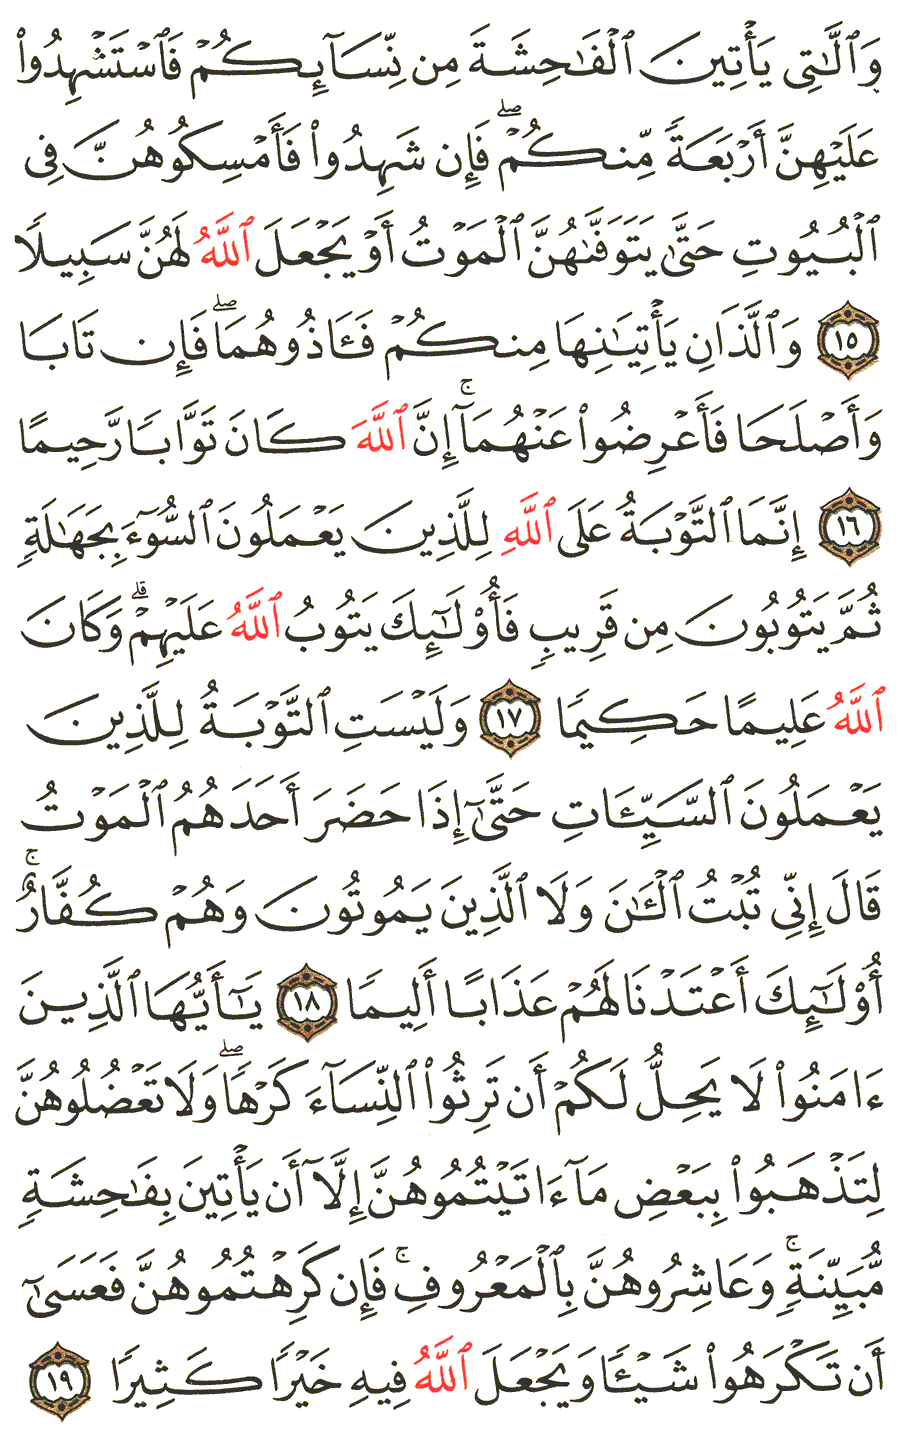 الصفحة 80 من القرآن الكريم